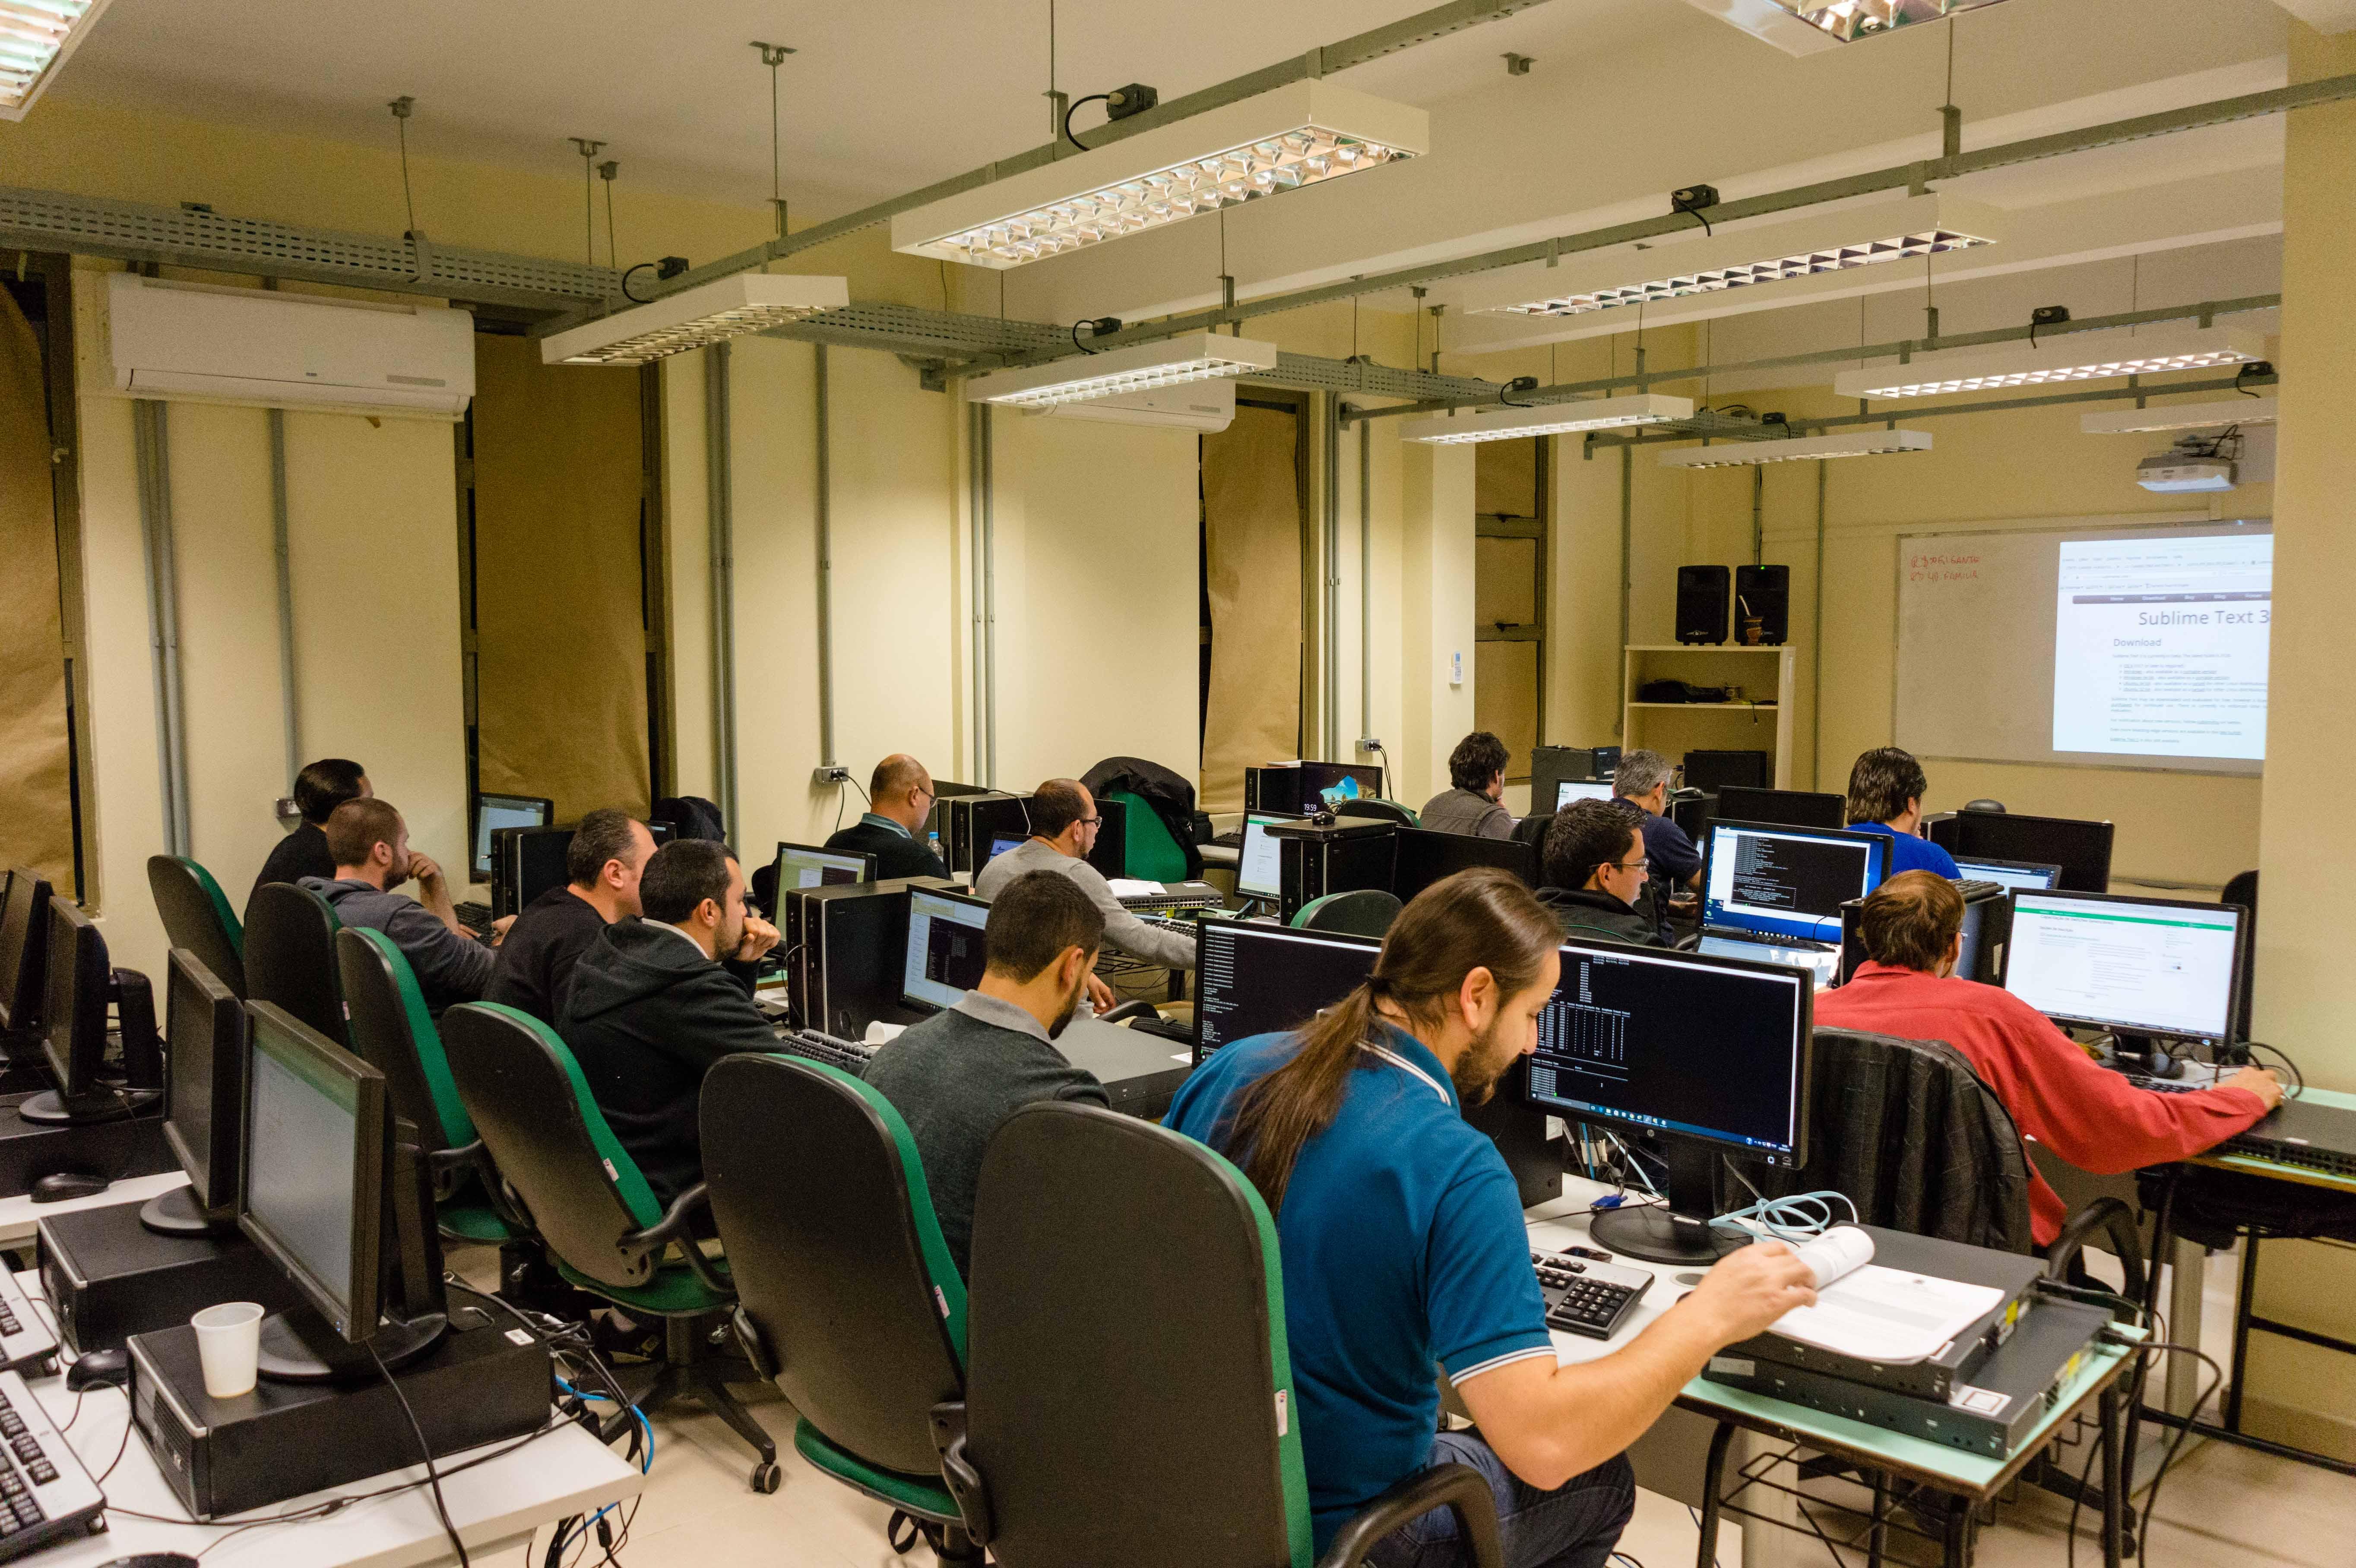 Na foto aparecem 13 servidores sentados em frente a computadores enquanto participam da parte prática da capacitação.